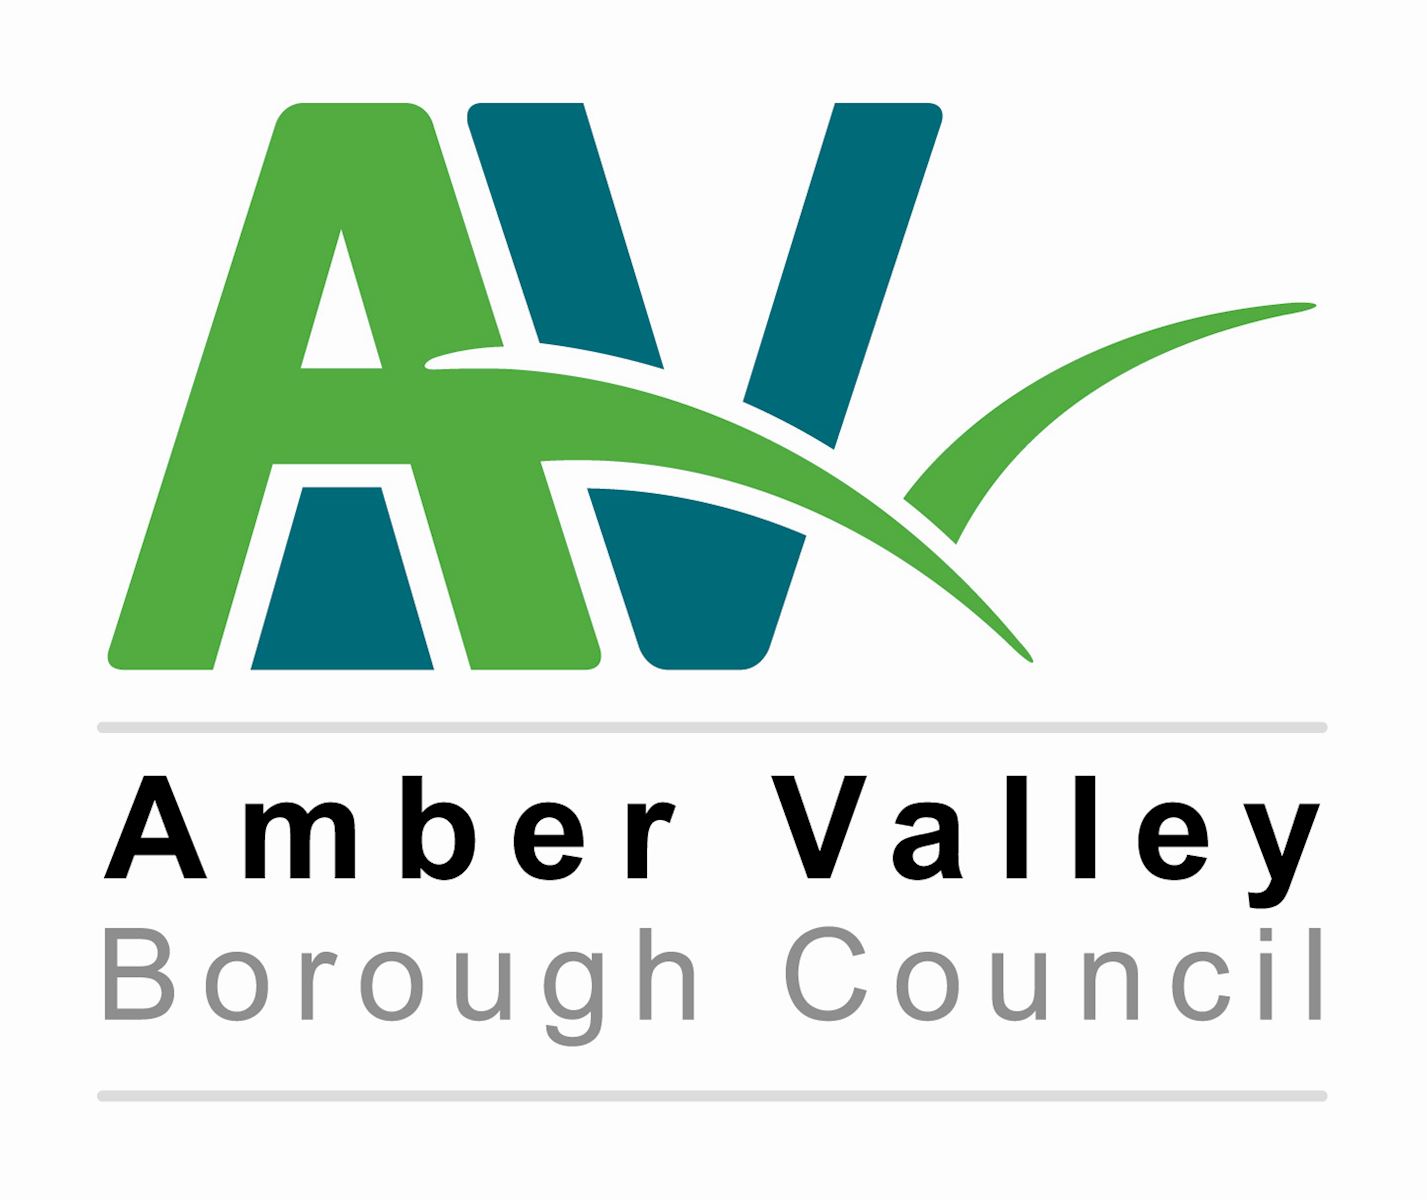 Amber Valley Borough Council